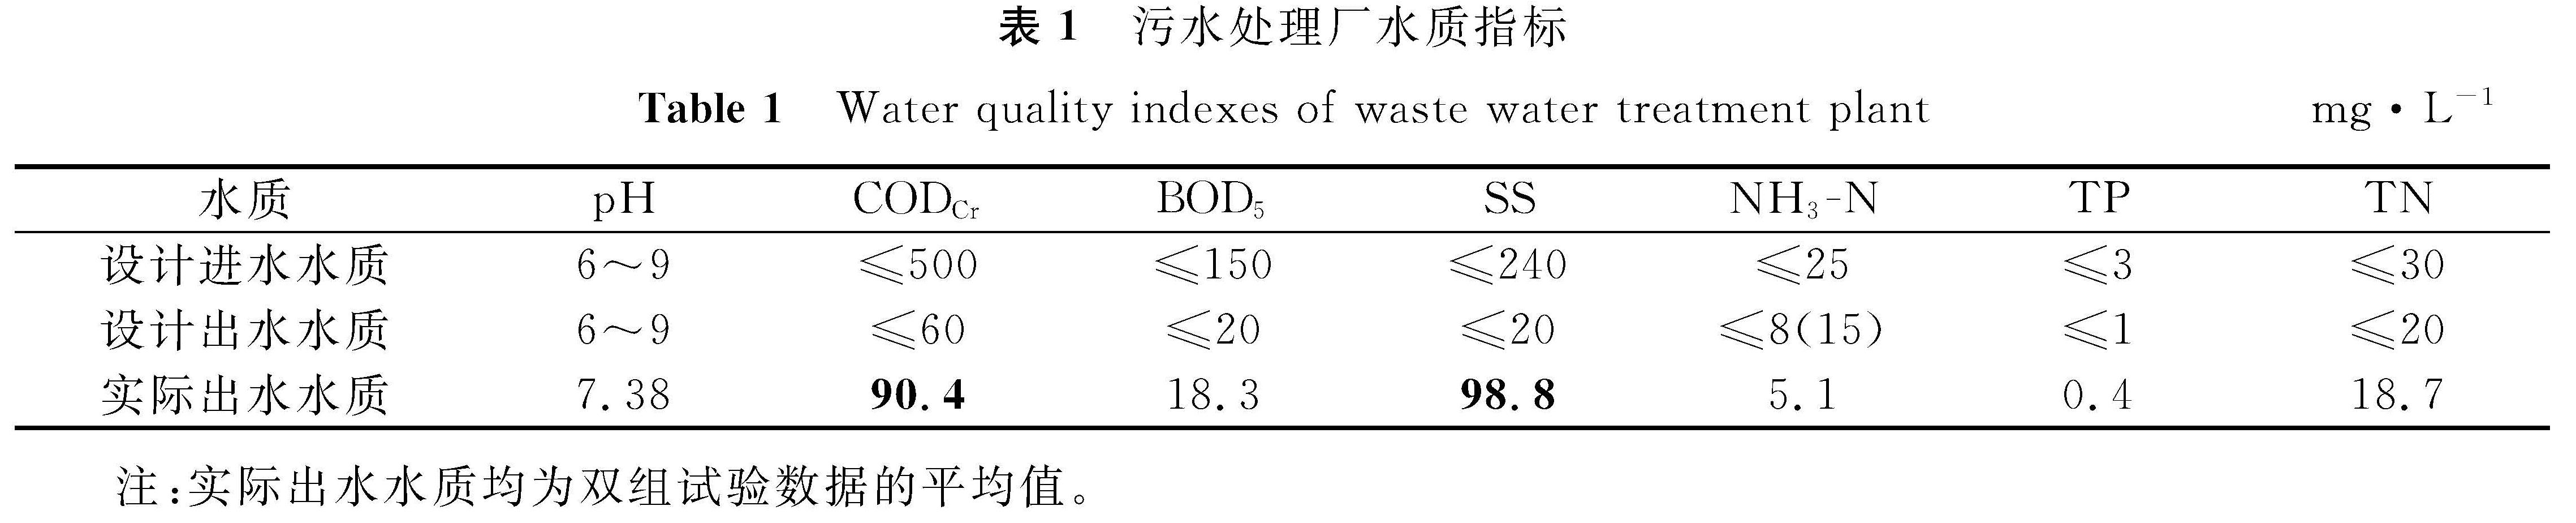 表1 污水处理厂水质指标<br/>Table 1 Water quality indexes of waste water treatment plantmg·L-1